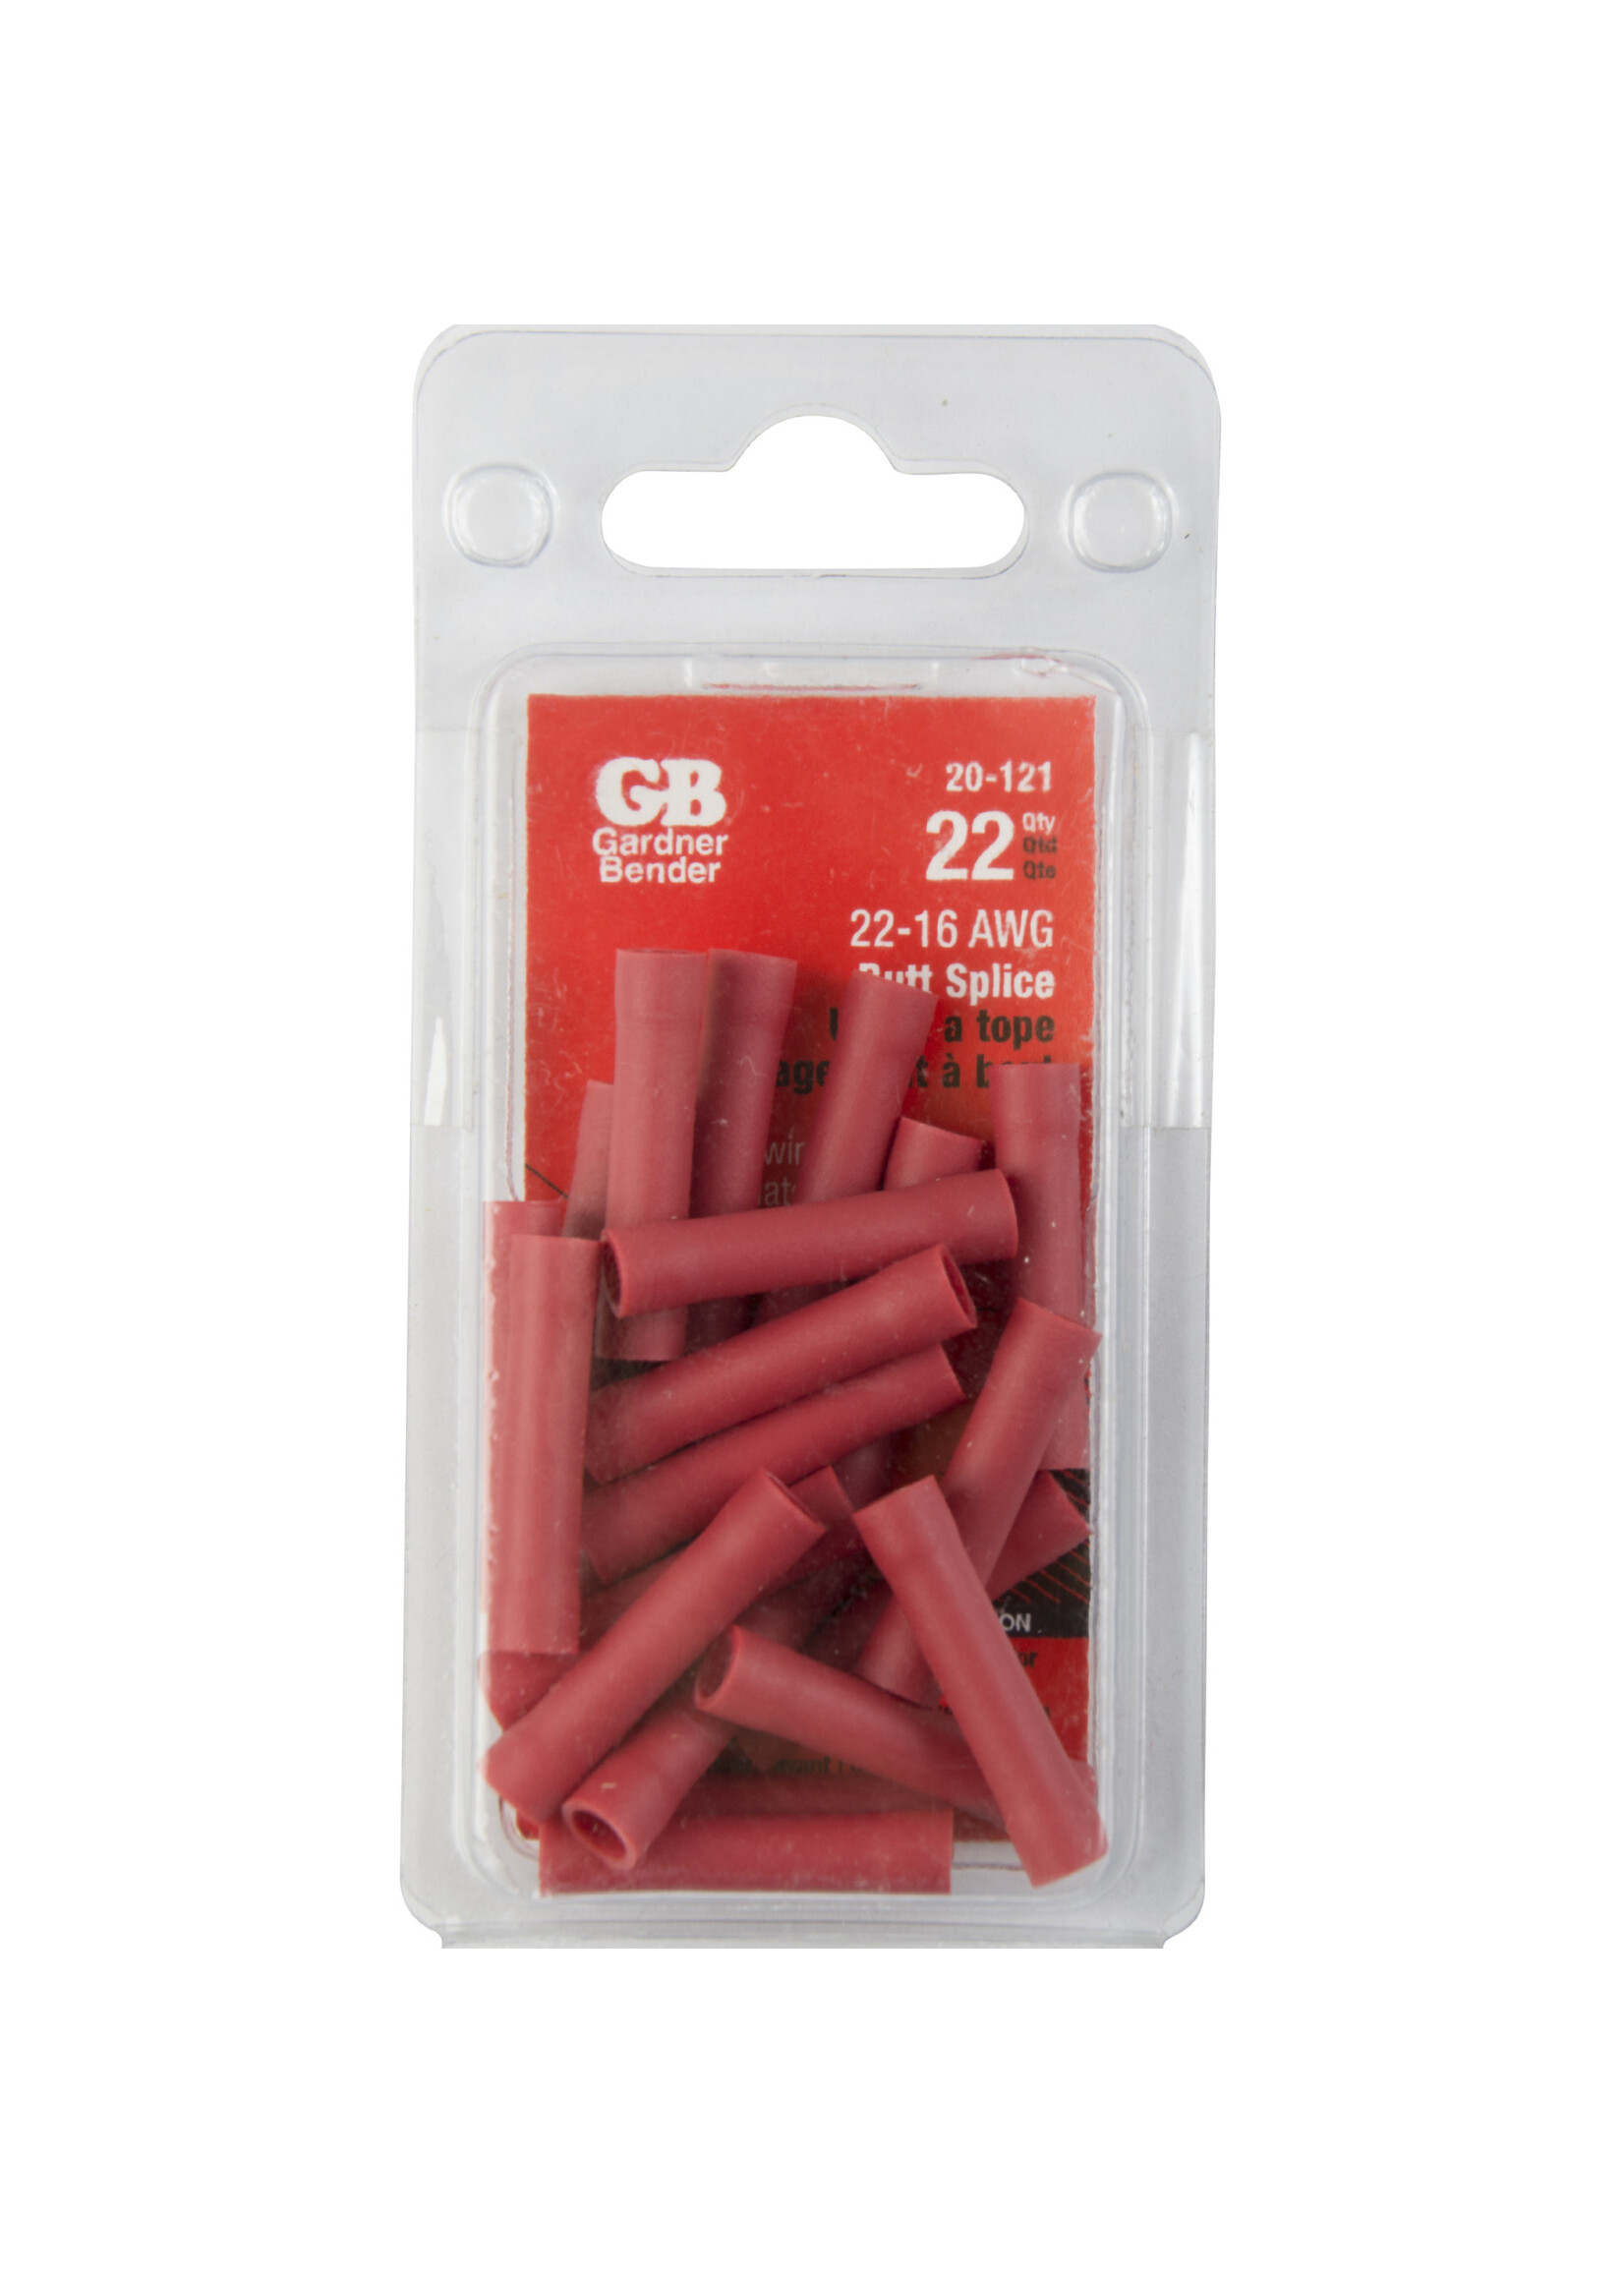 GARDNER BENDER Butt Splice, Crimp Connector, #22-#18 AWG (0.8 mm²) Vinyl Insulated, Red, (22/Pkg) - 20-121